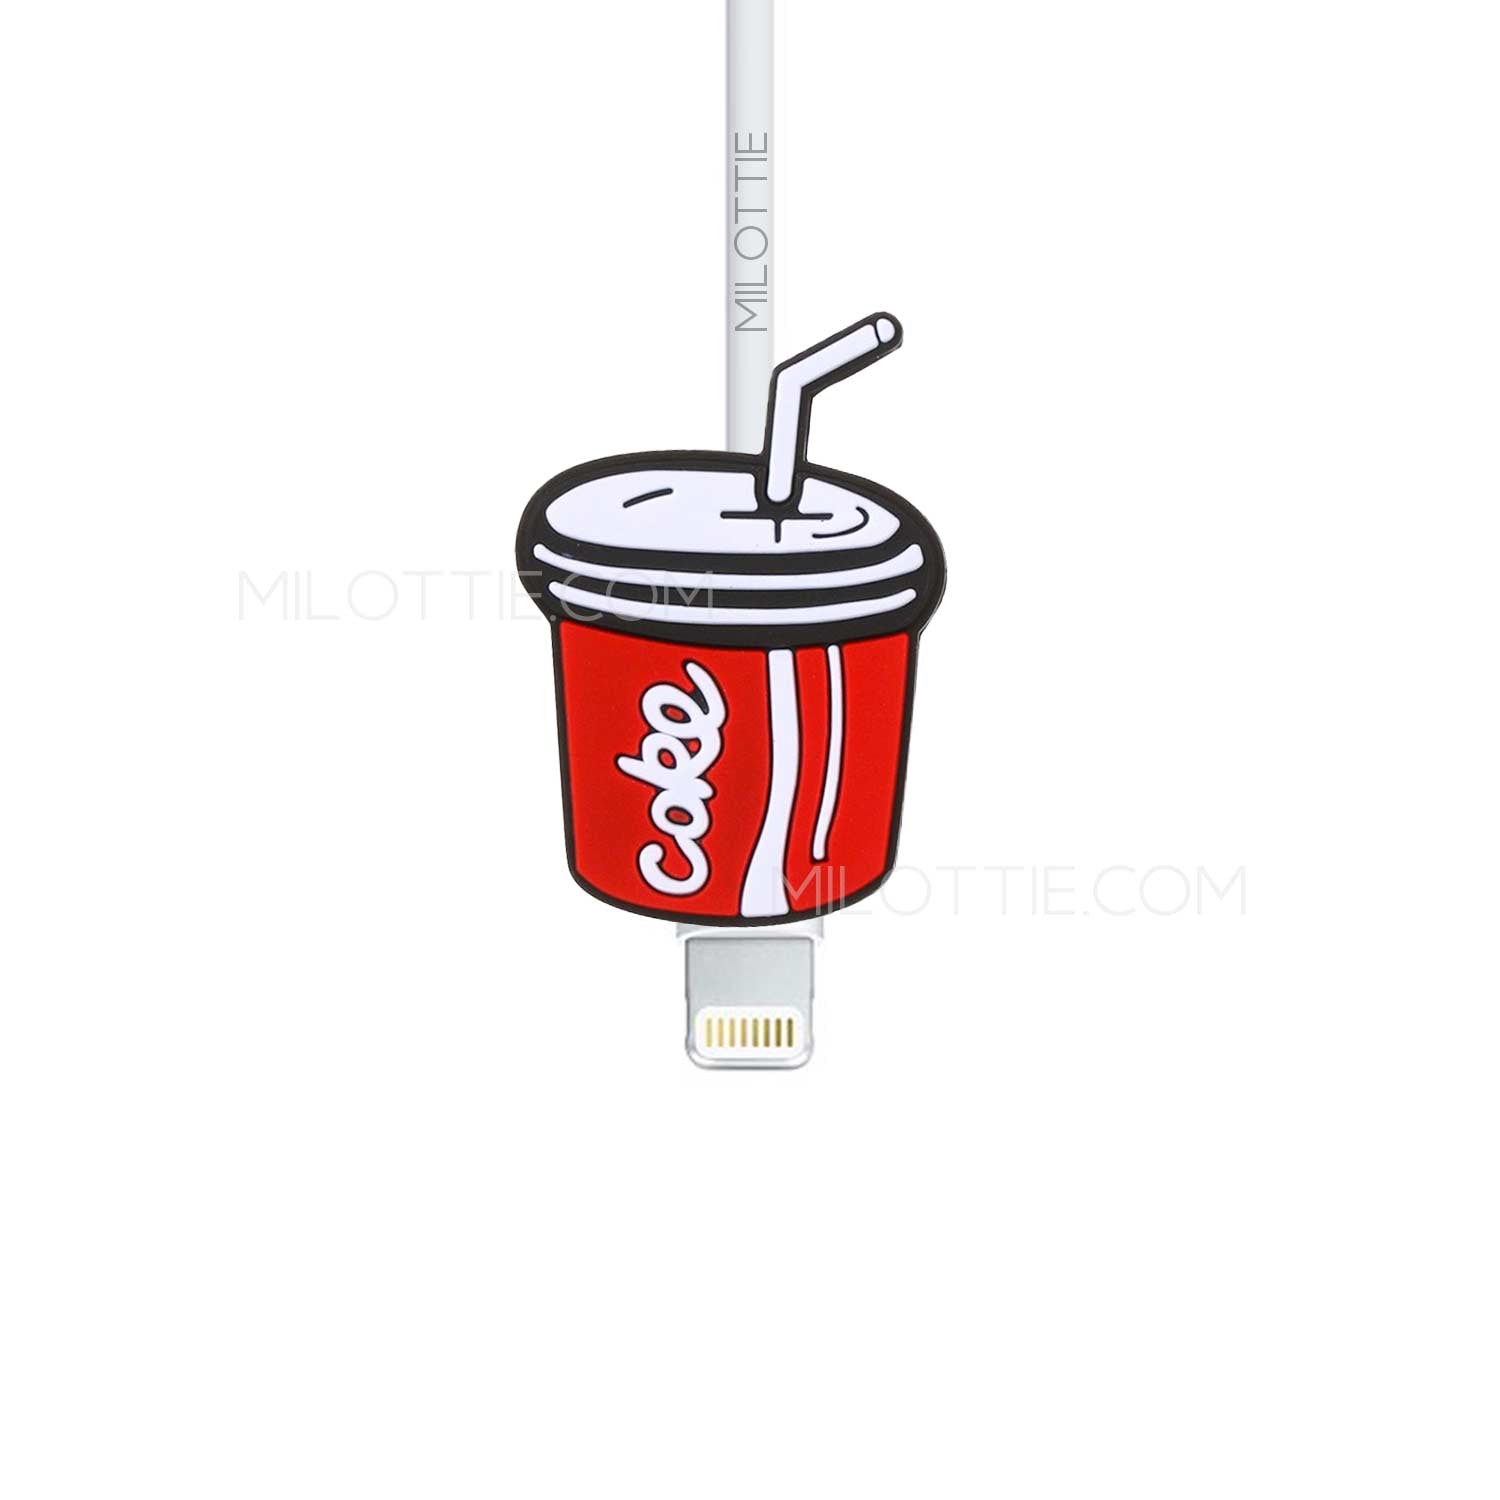 Coke drink Lightning cable - Milottie